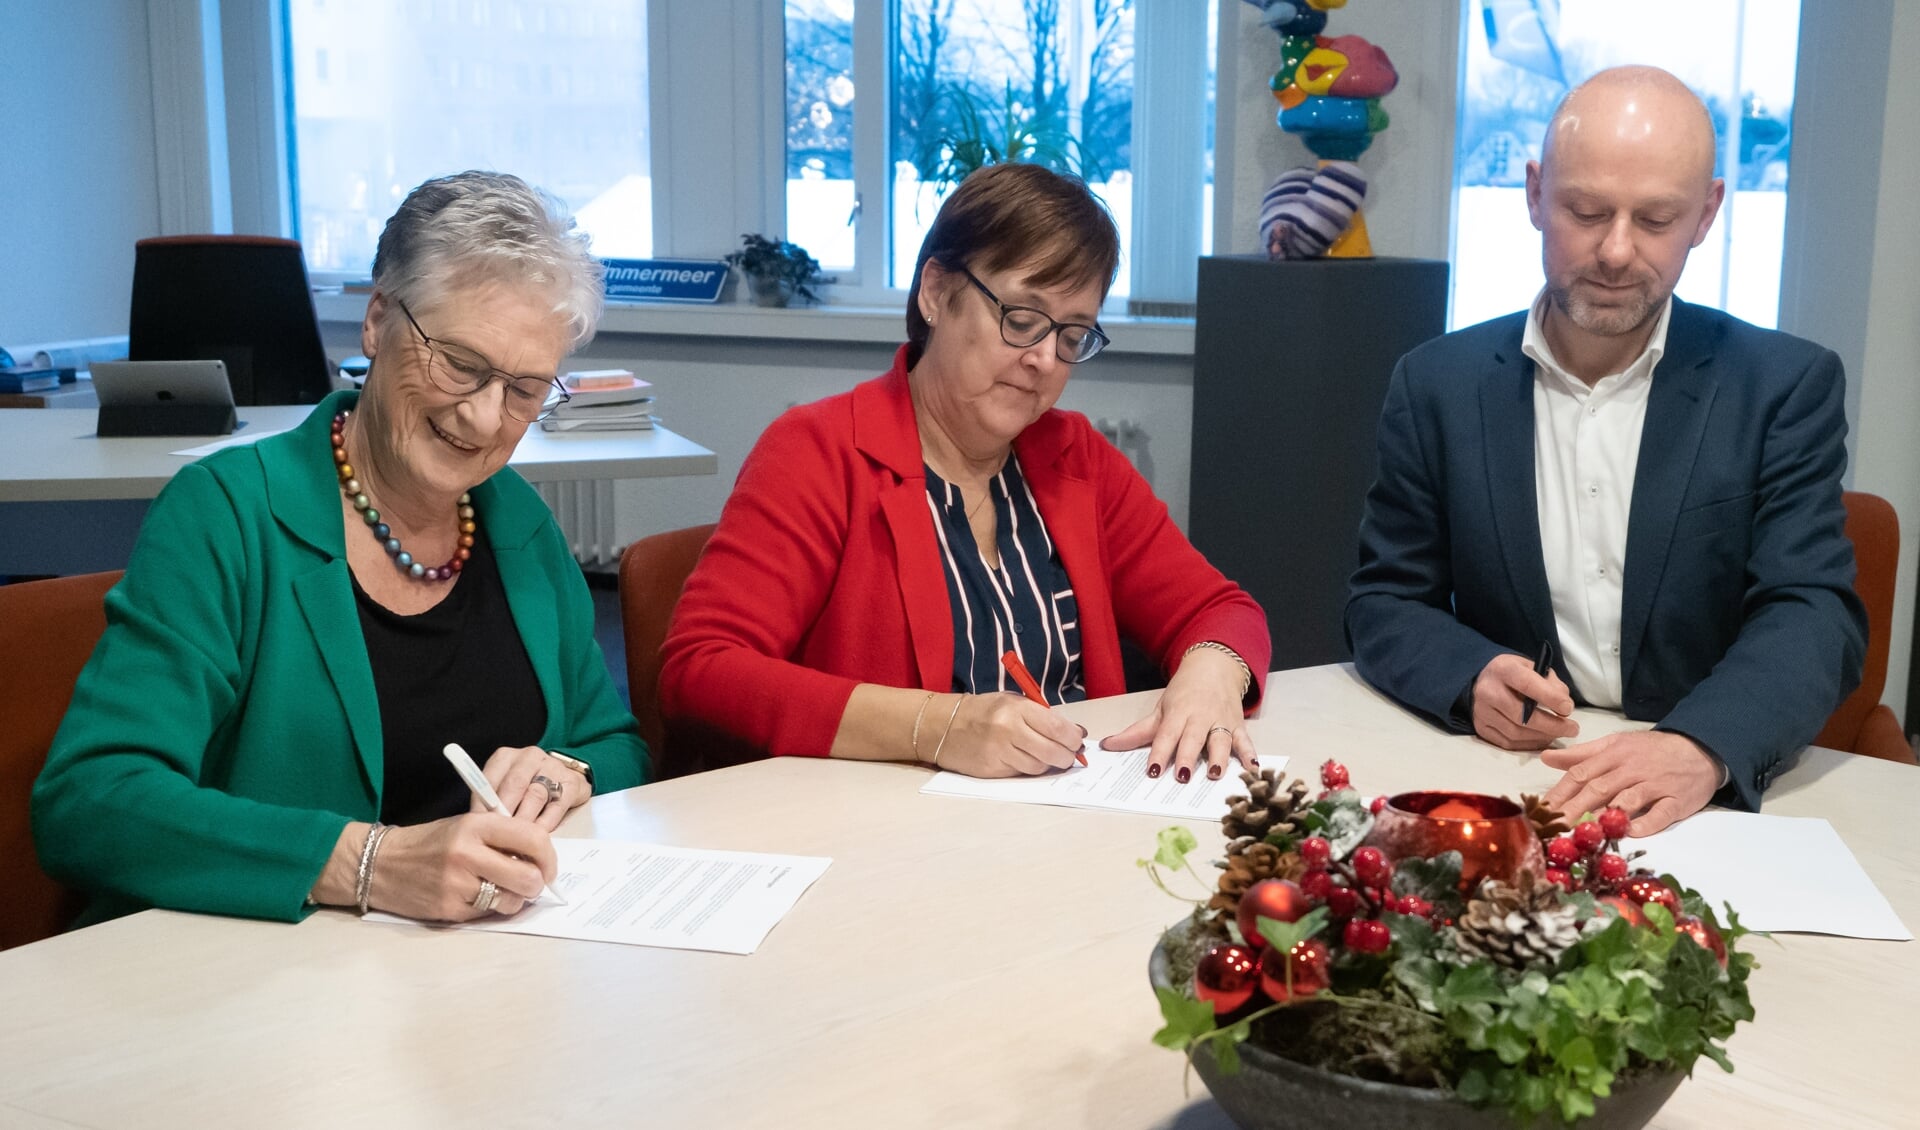 Bea van Doorn (groen jasje) van Alert, wethouder Mieke Booij (rood jasje) en Danny Wijnbelt van Woningcorporatie Eigen Haard. 